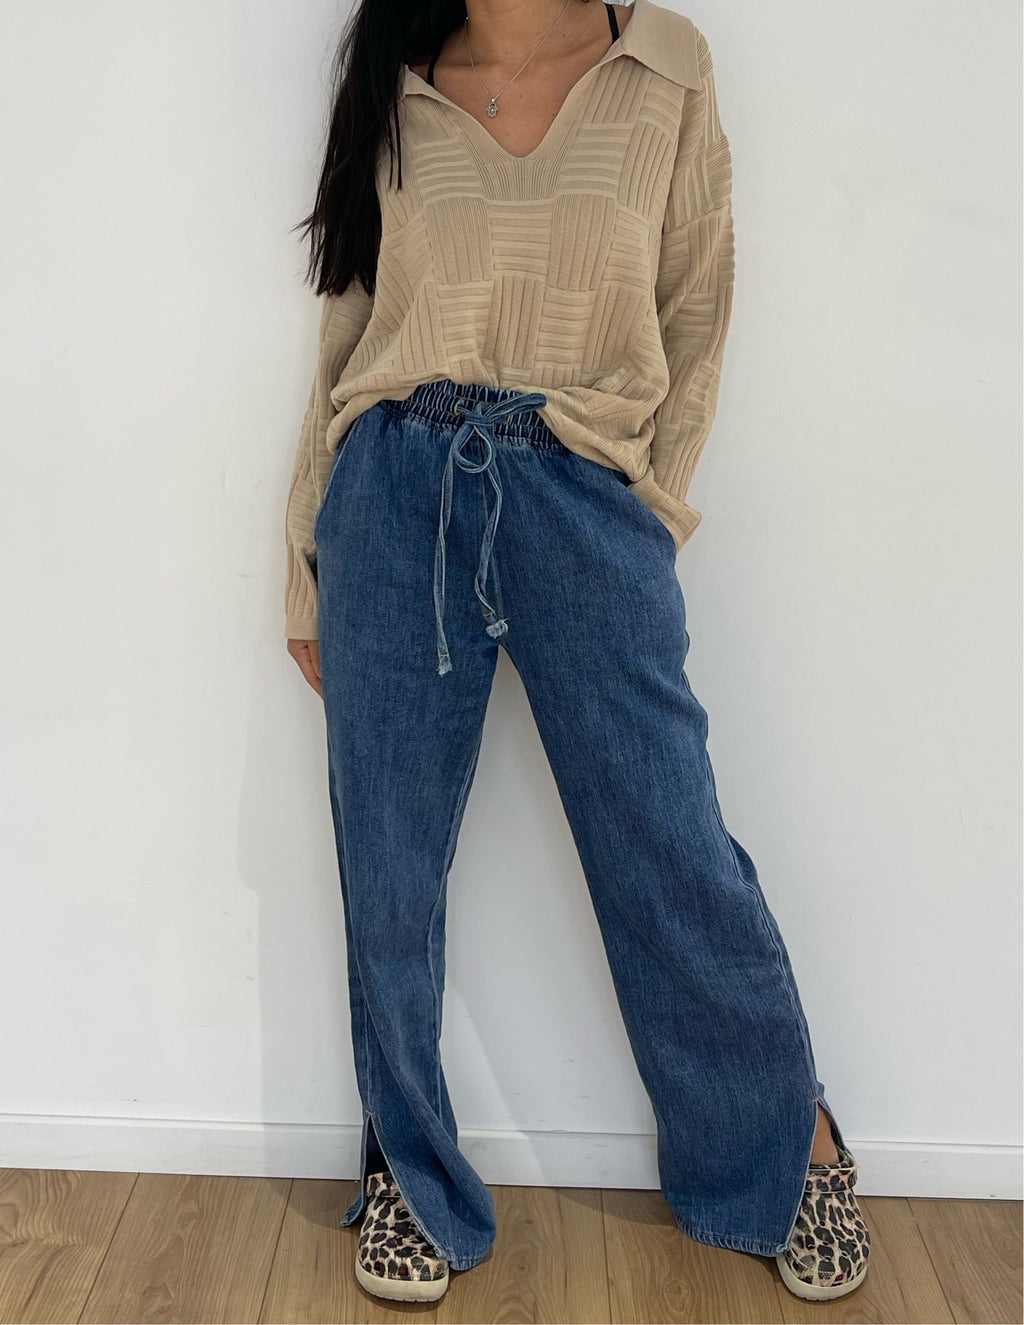 Femme présentant le pantalon jeans dégaine à taille haute